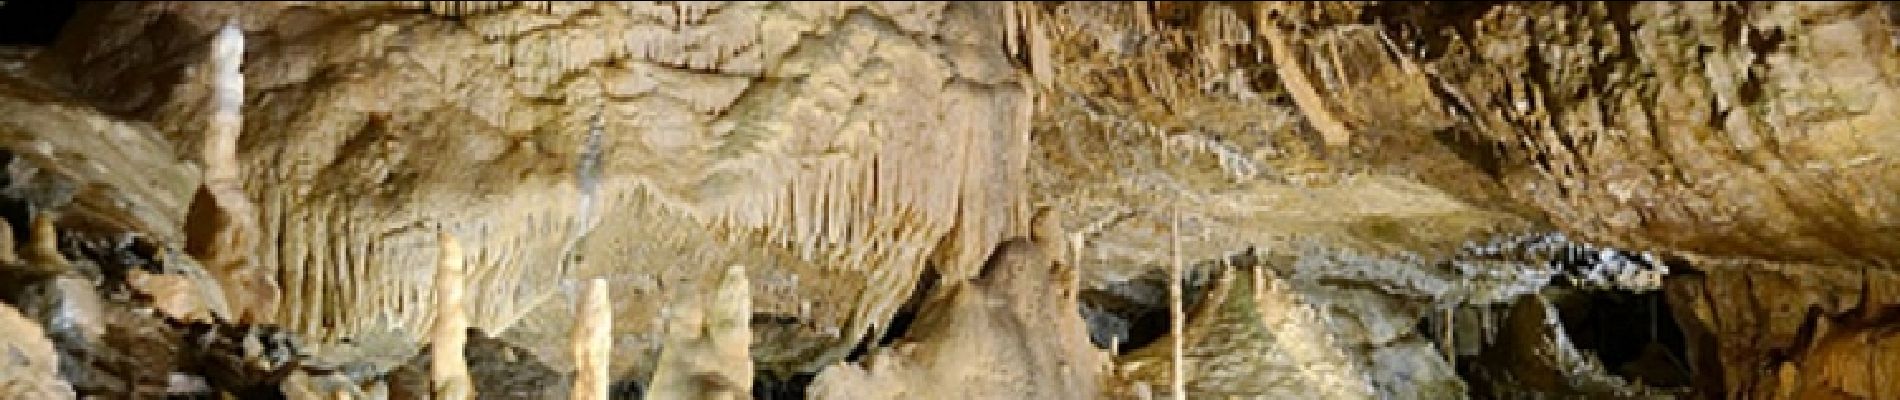 Punto di interesse Hotton - Grottes de Hotton - Bon plan - A visiter à proximité de la balade - Photo